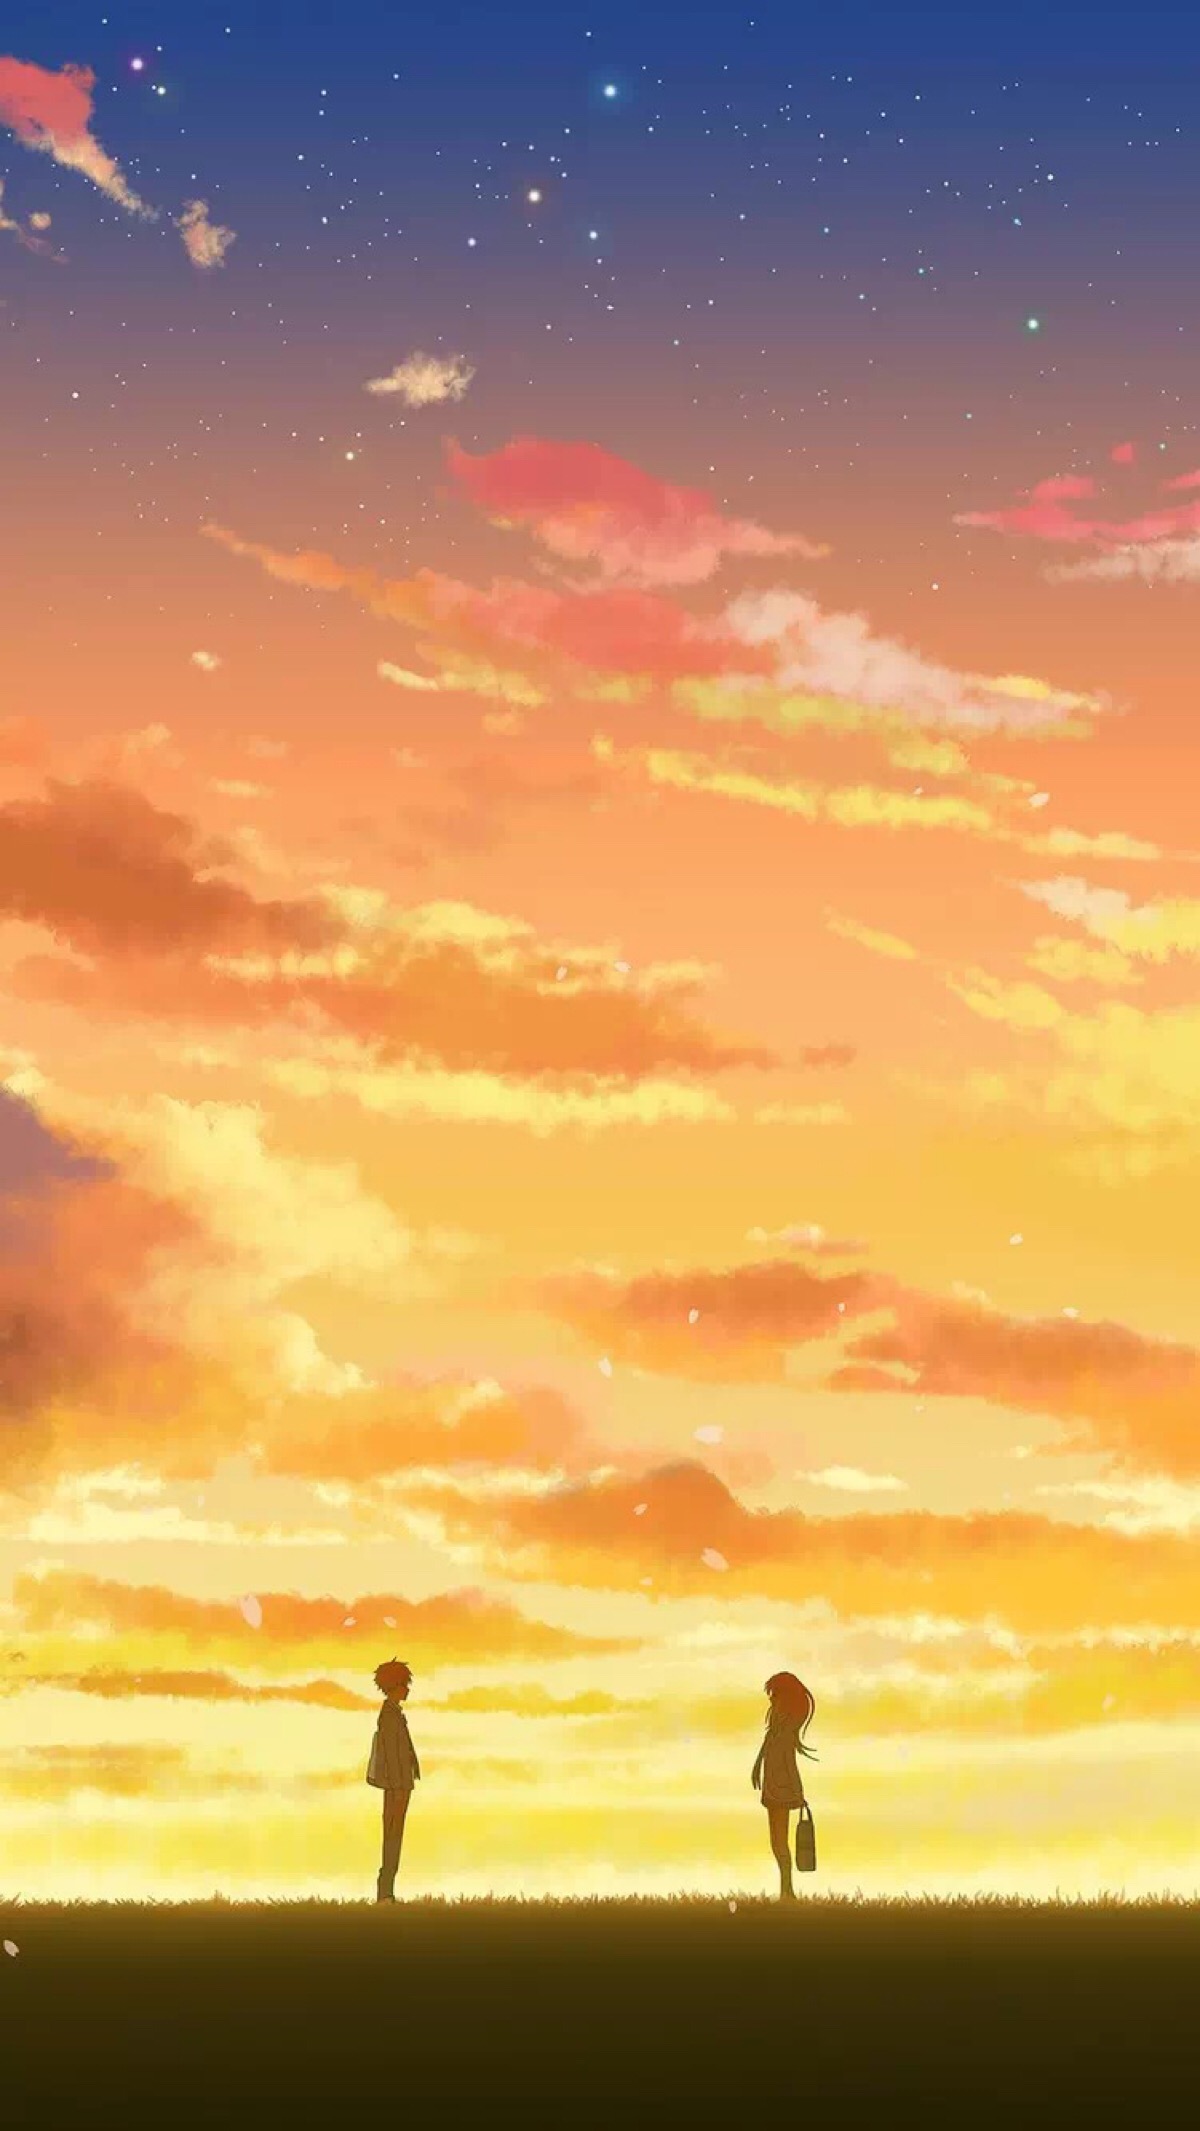 【夕阳黄昏】唯美画风的二次元动漫风景壁纸【电脑壁纸 (四) 】 - 哔哩哔哩